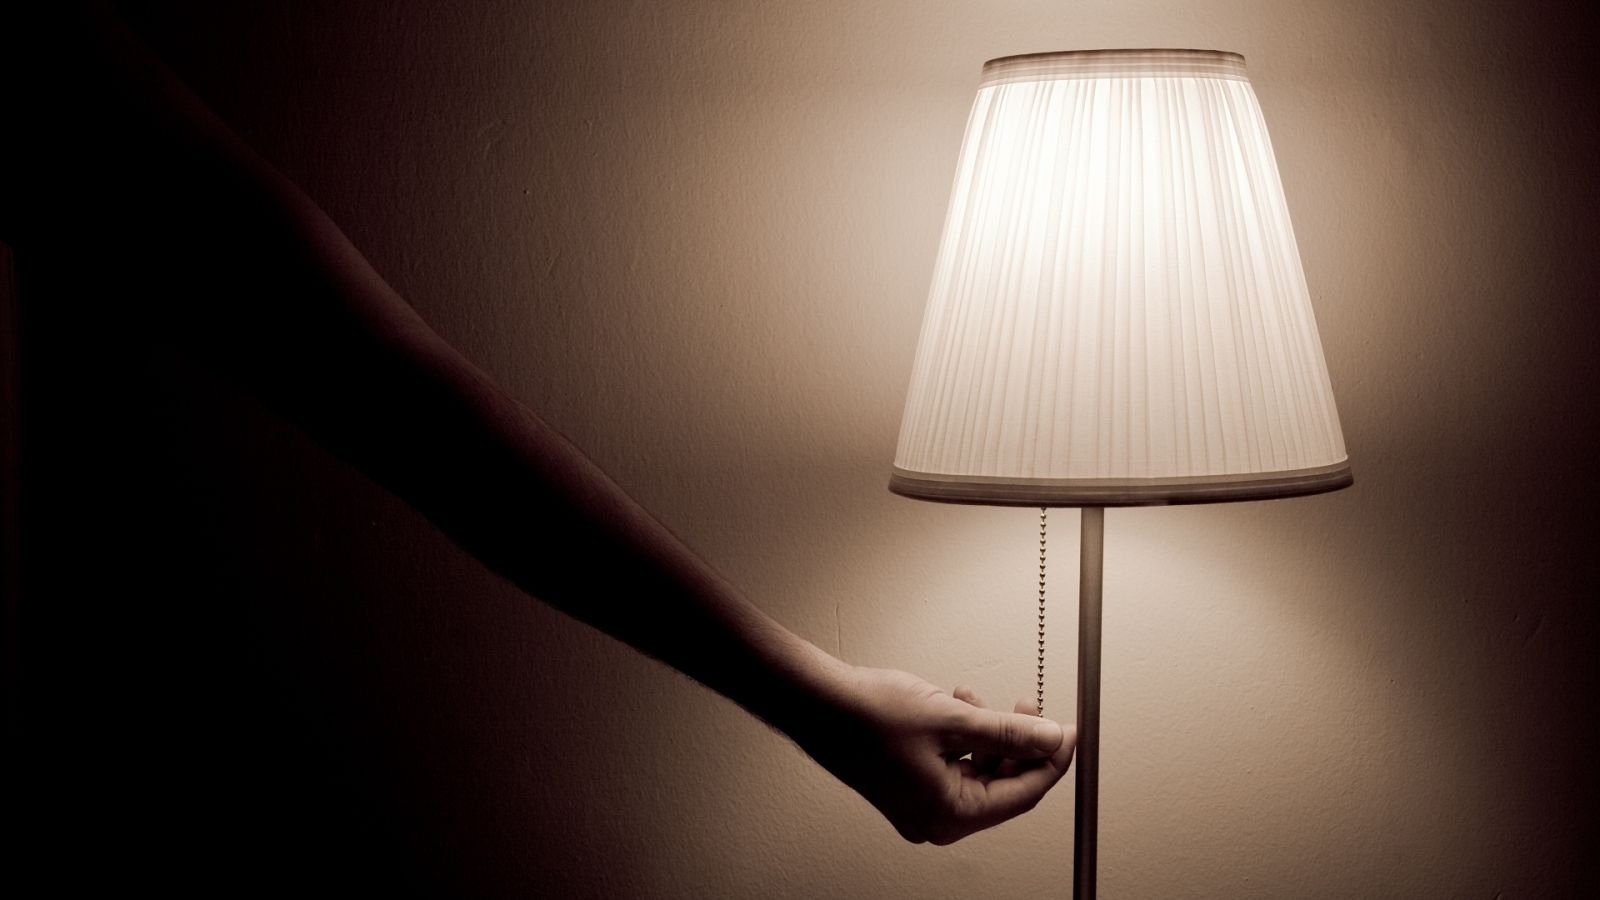 Una persona enciende una lámpara en su vivienda